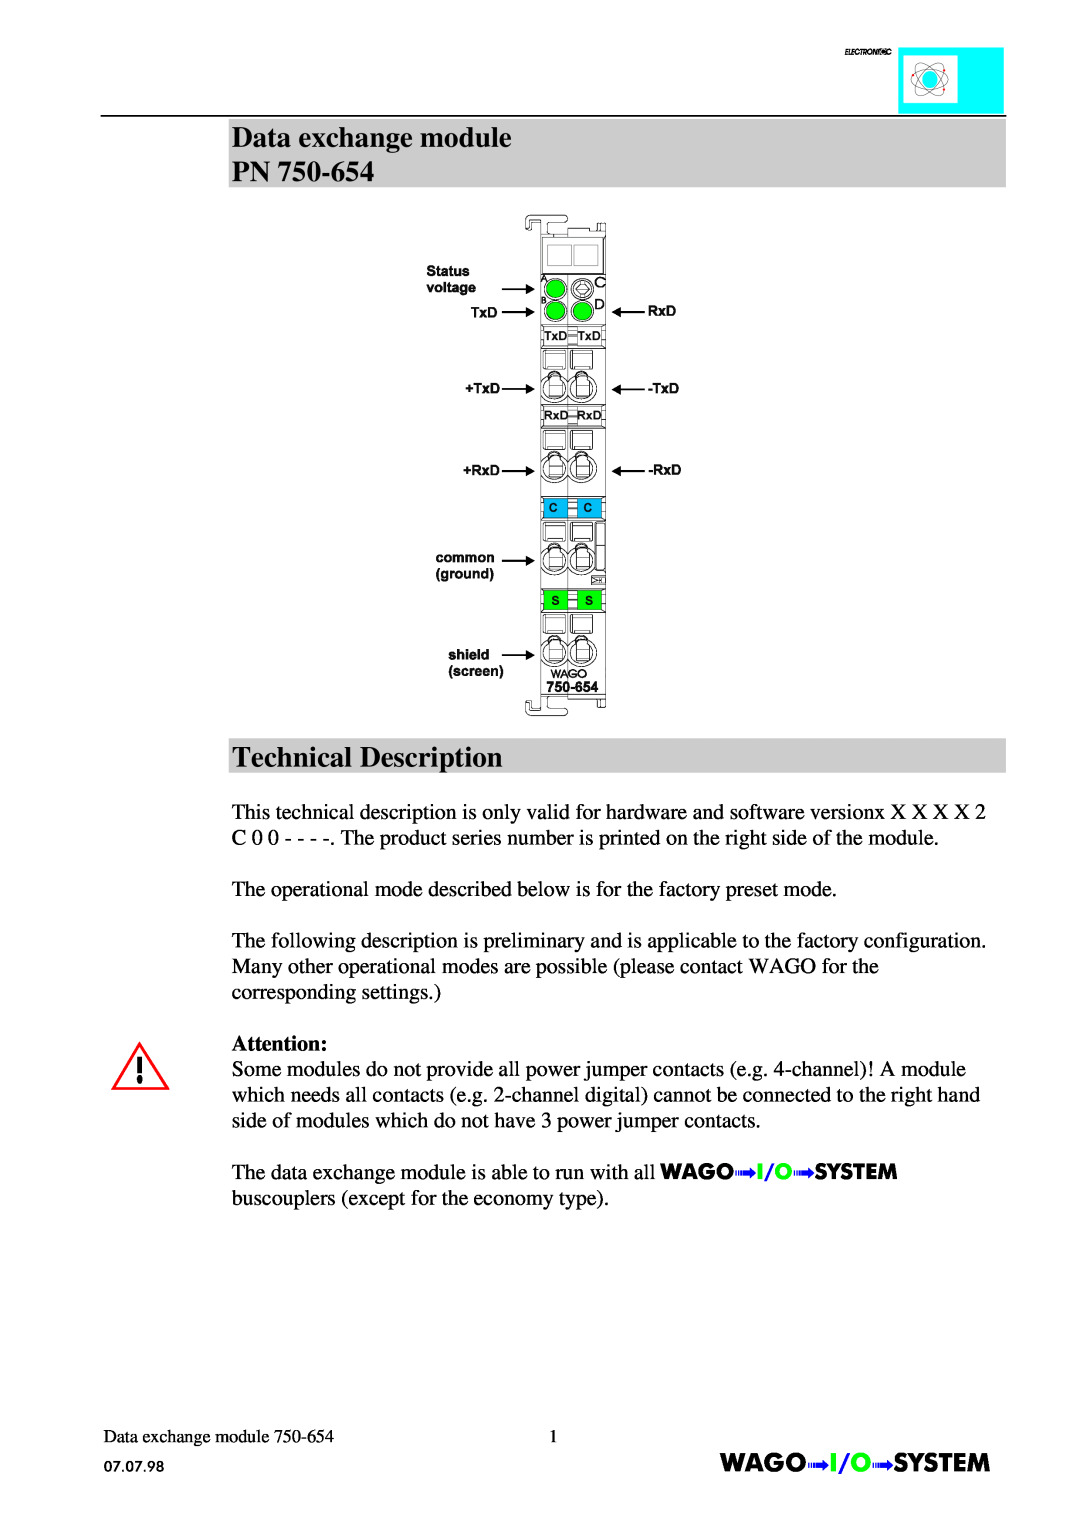 Quatech INTERBUS S manual Data exchange module PN Technical Description, Dataexchange module 